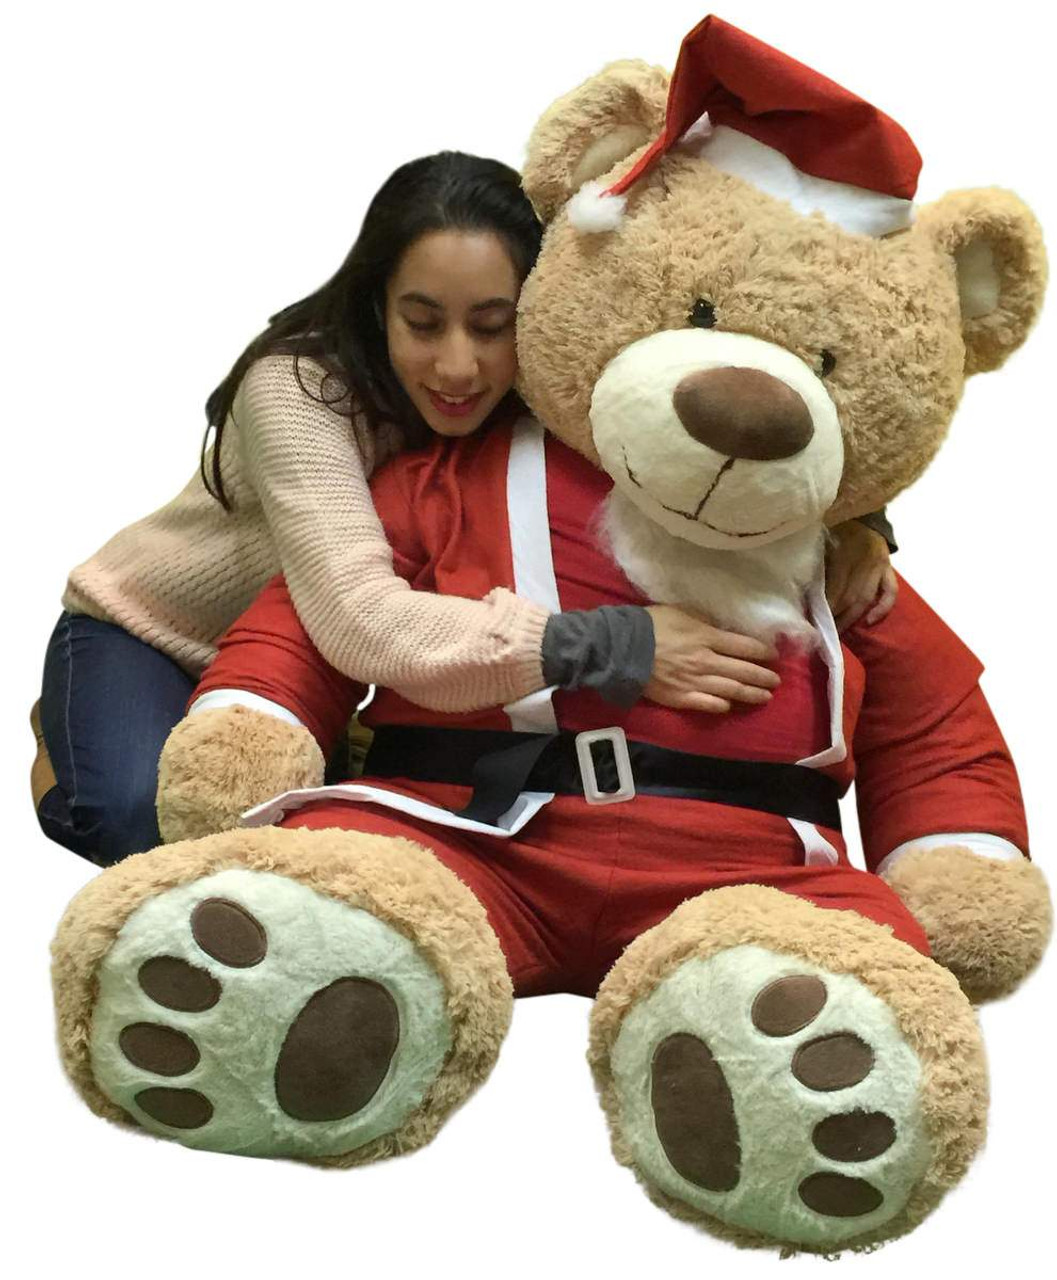 Giant Christmas Teddy Bear 60 Inch Soft, Wears Santa Claus Suit 5 Foot Xmas  Teddybear Tan